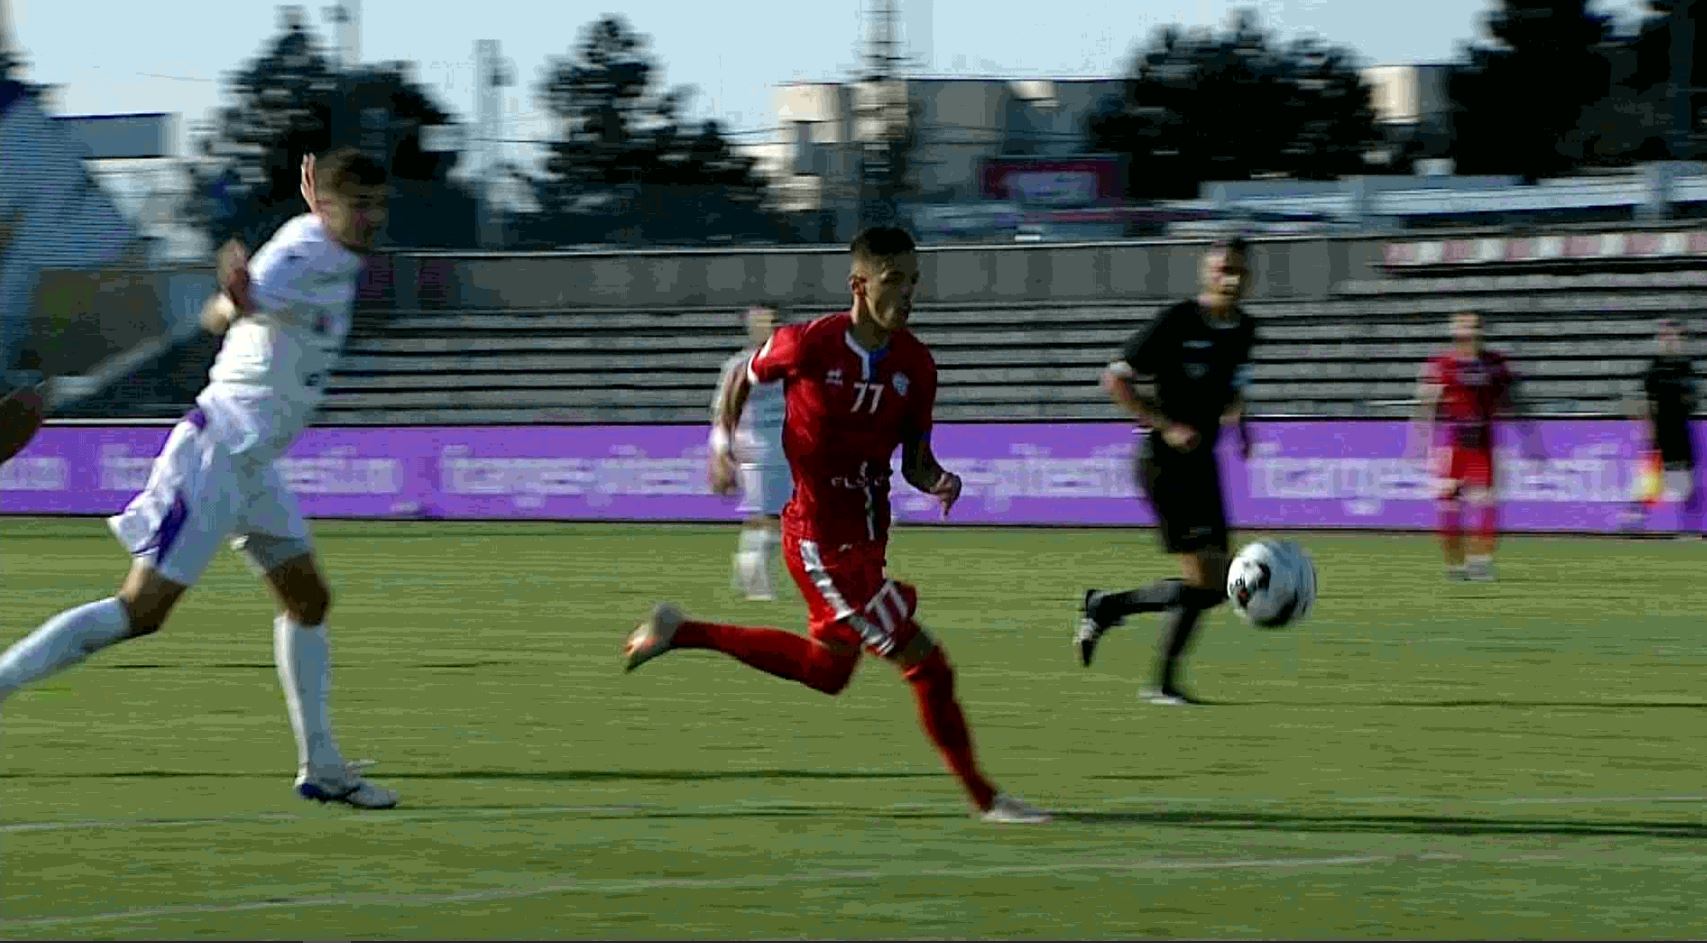 Noul Ianis Hagi de la echipa națională U21, cotat la 250.000 de euro, a reușit primul gol al campionatului